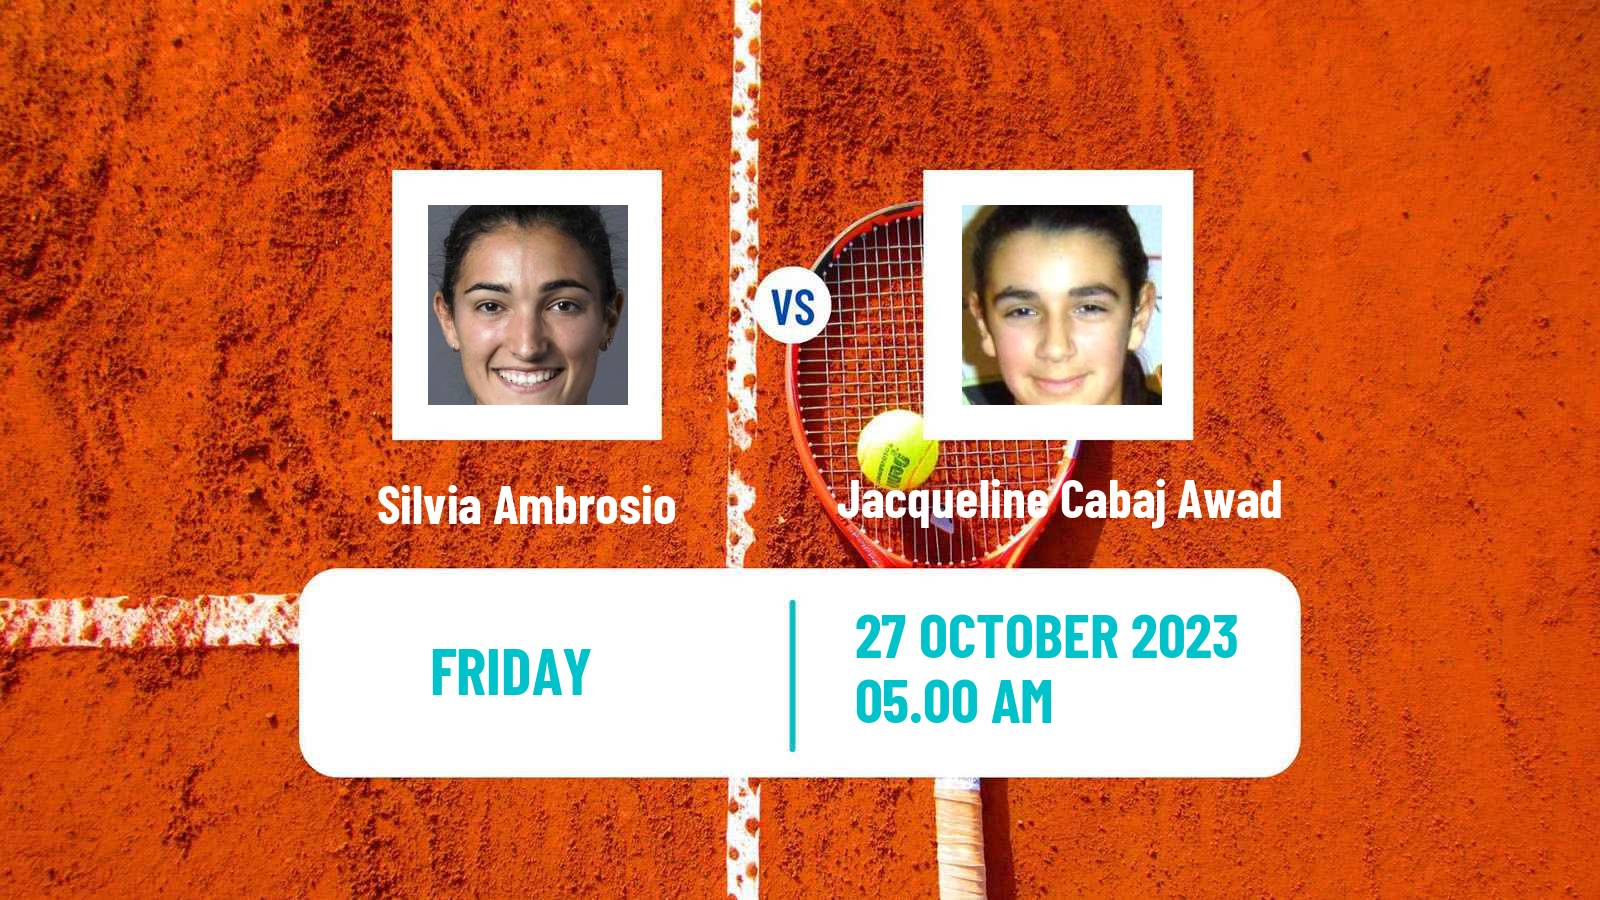 Tennis ITF W25 Loule Women Silvia Ambrosio - Jacqueline Cabaj Awad